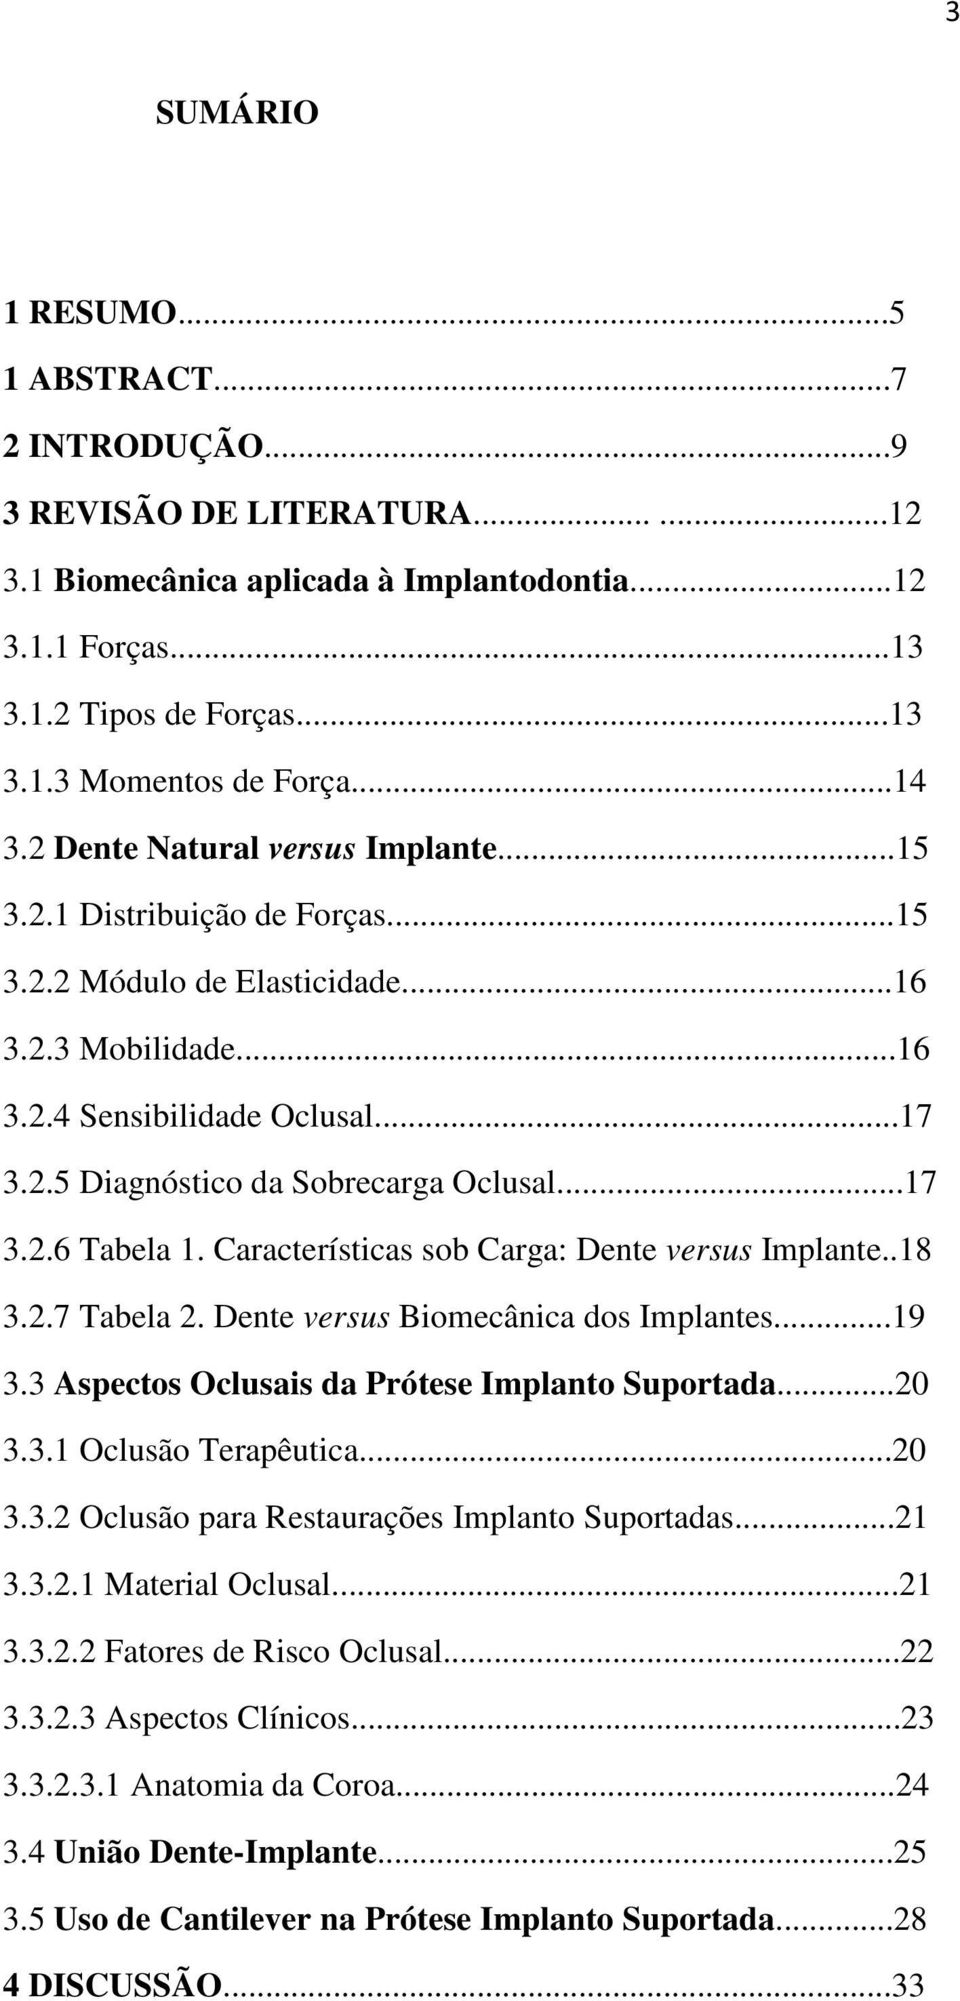 ..17 3.2.6 Tabela 1. Características sob Carga: Dente versus Implante..18 3.2.7 Tabela 2. Dente versus Biomecânica dos Implantes...19 3.3 Aspectos Oclusais da Prótese Implanto Suportada...20 3.3.1 Oclusão Terapêutica.